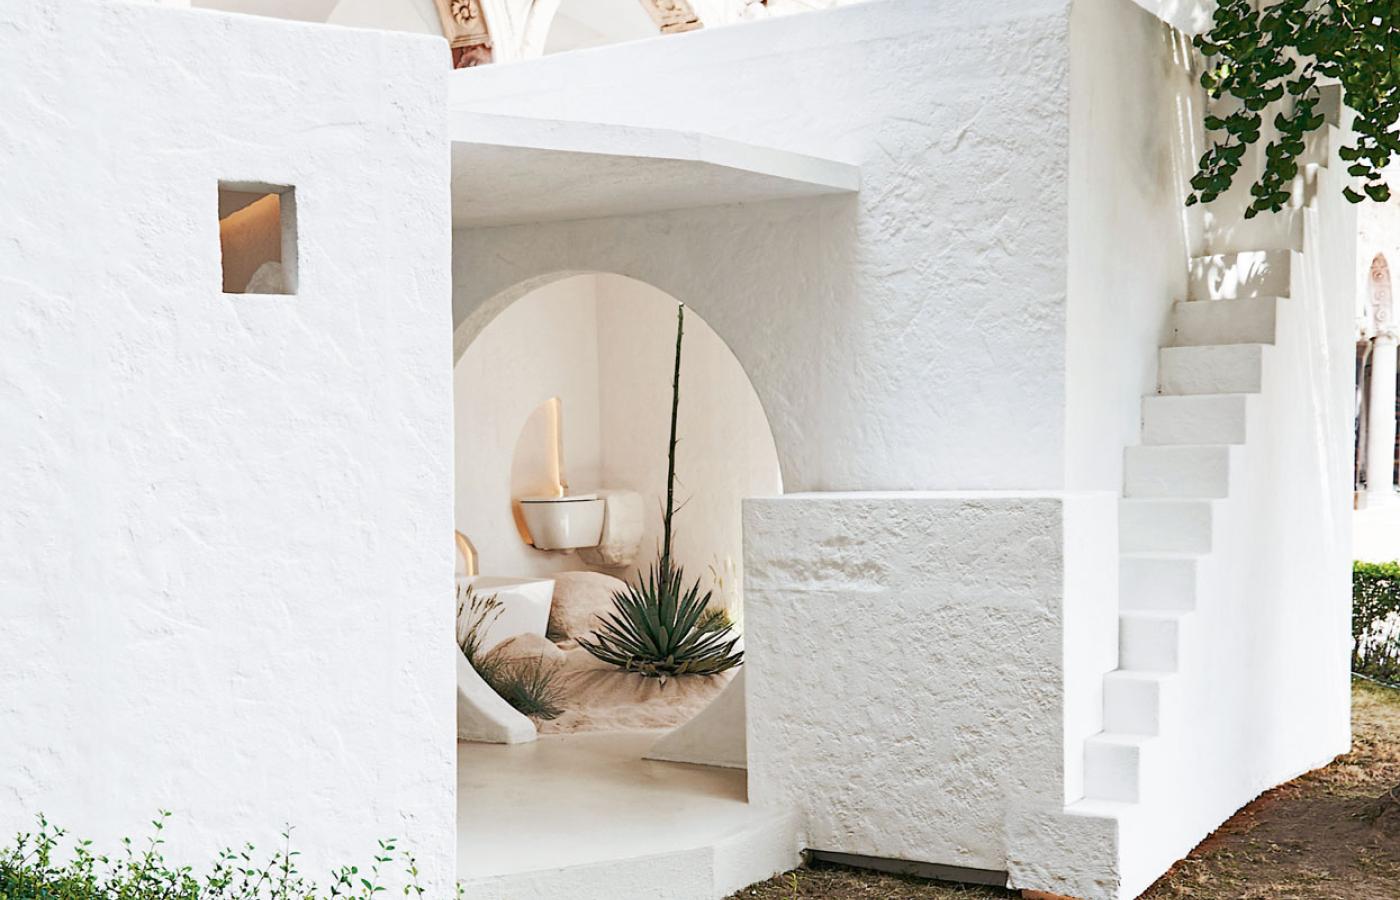 Bielona wapnem chata – ukłon dla tradycyjnej zabudowy Balearów.